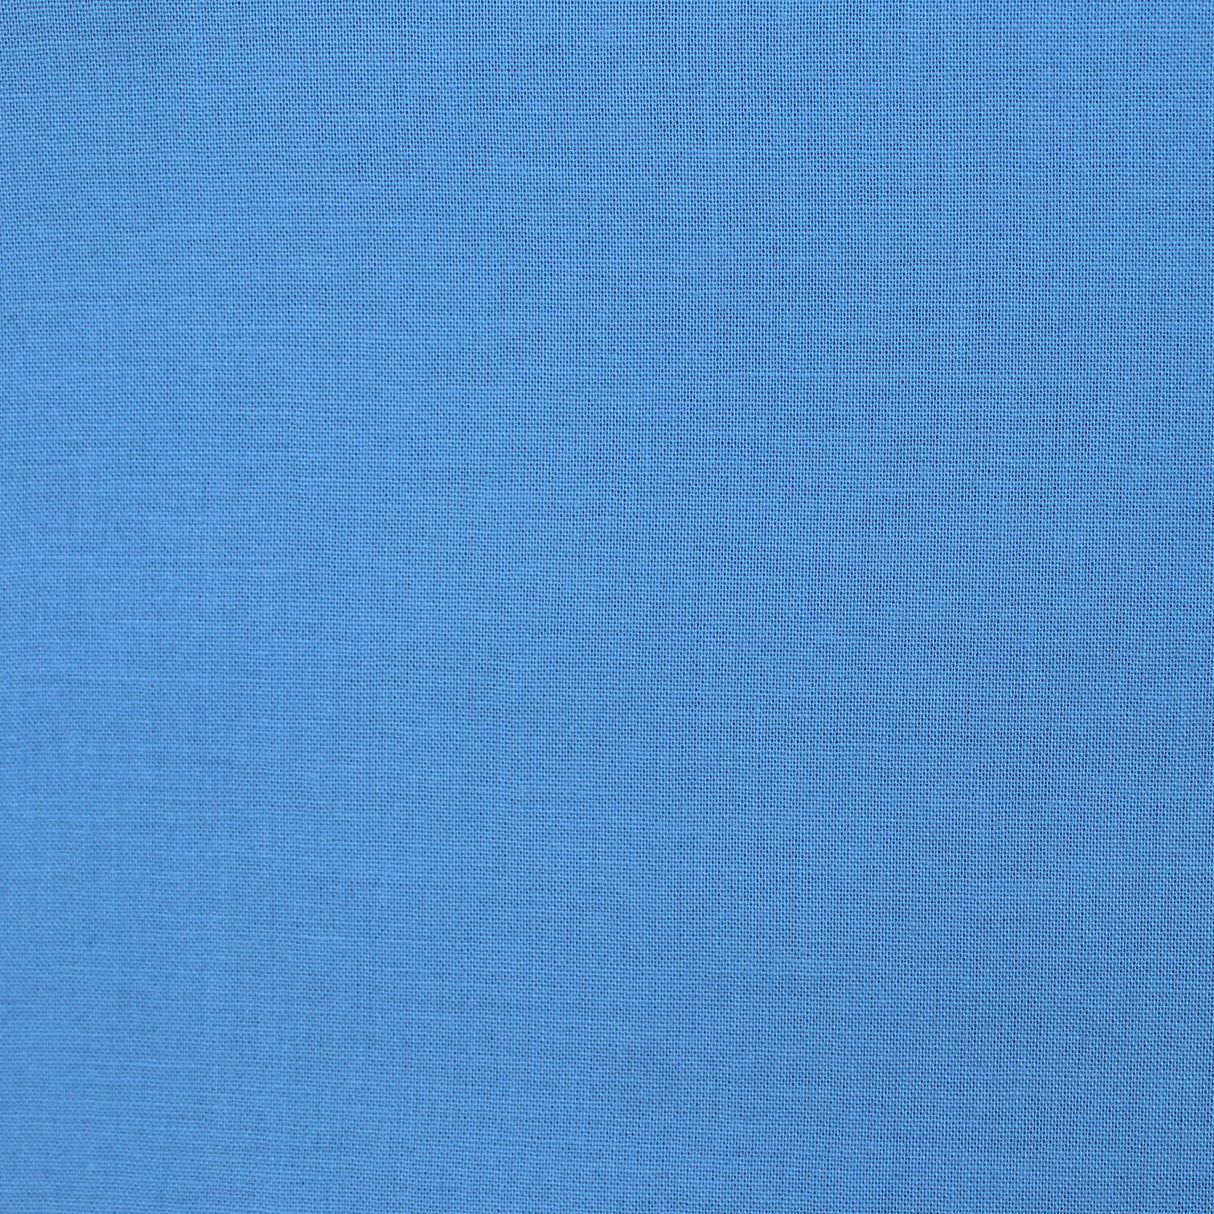 cotton colour bluebell